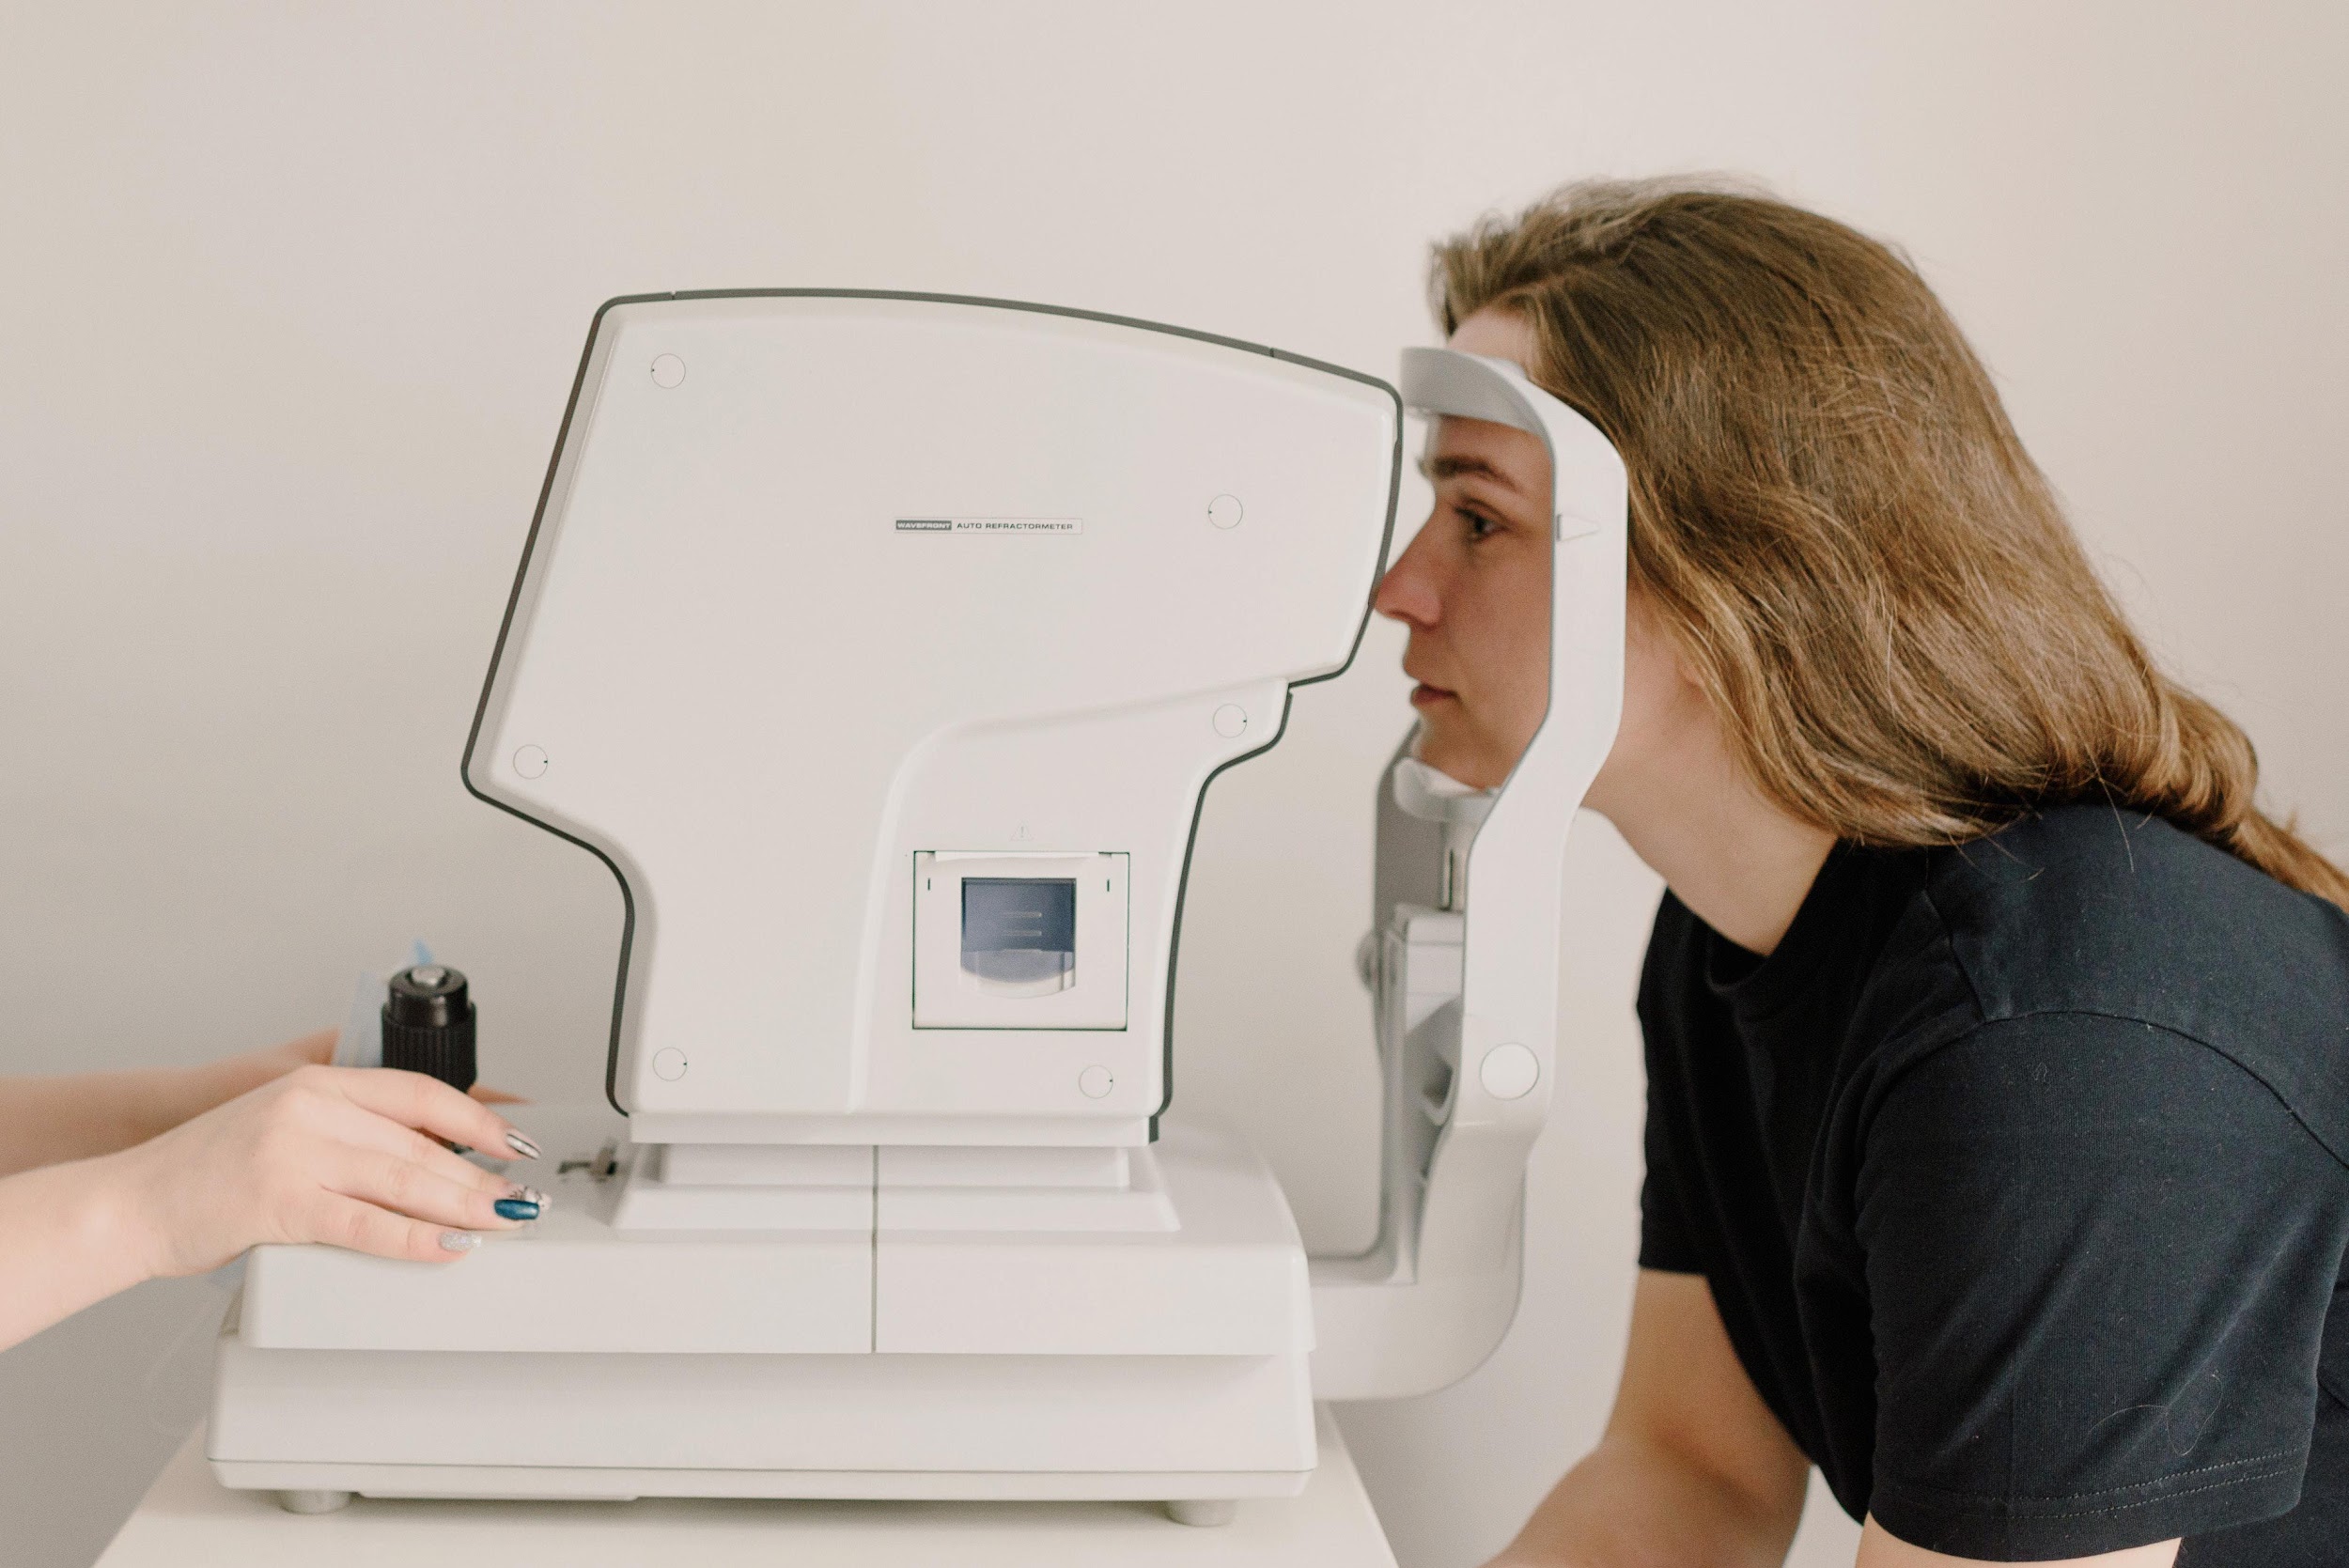 Consultas regulares ao oftalmologista são importantes para prevenção de doenças oculares. (Fonte: Ksenia Chernaya/Pexels/Reprodução)